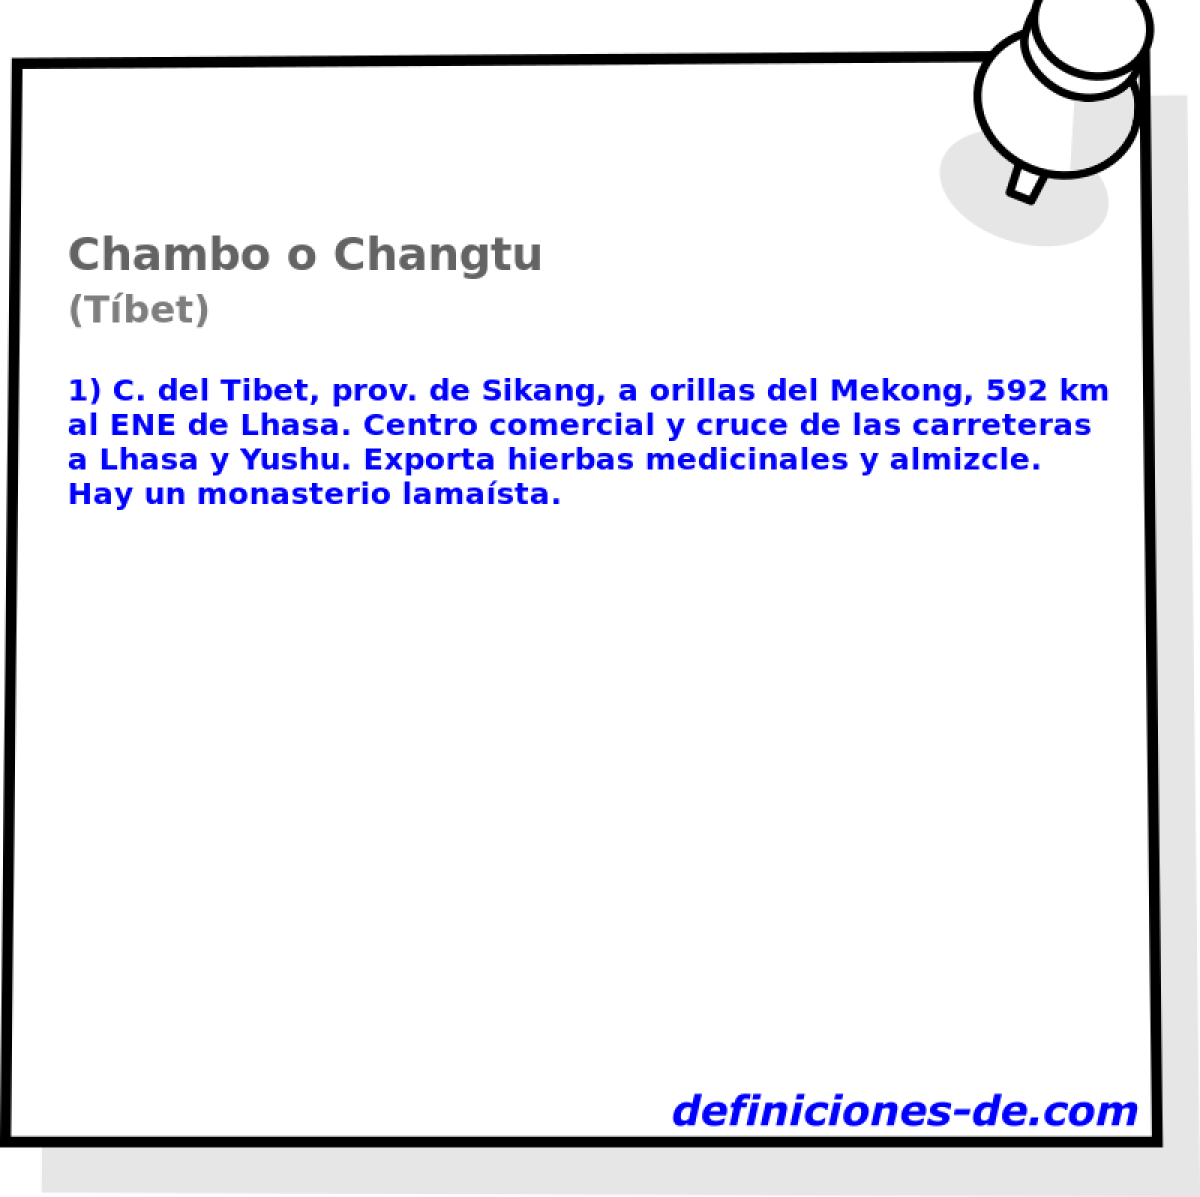 Chambo o Changtu (Tbet)